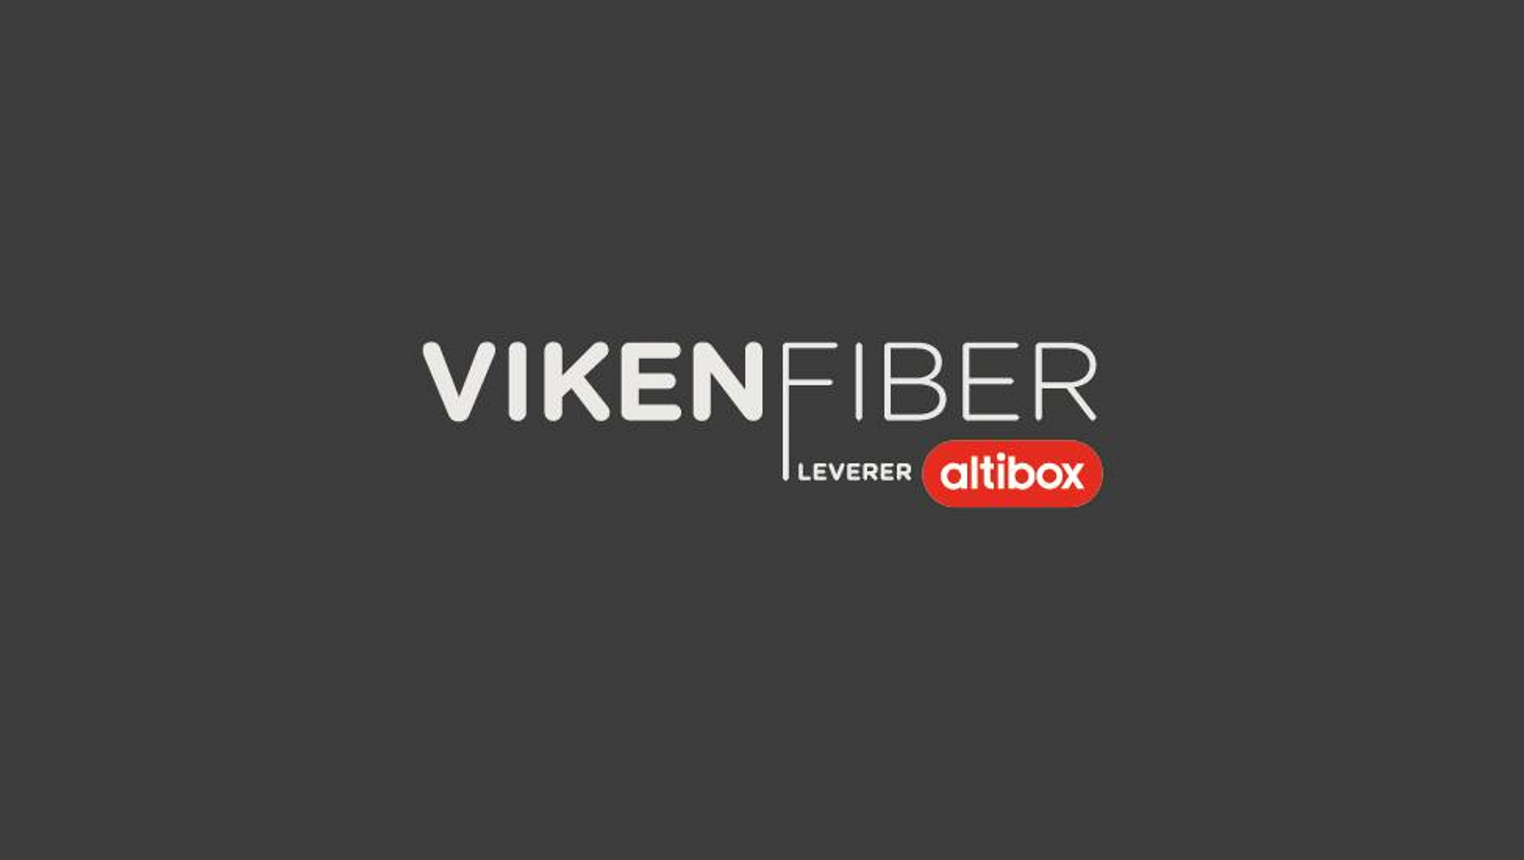 Viken-fiber